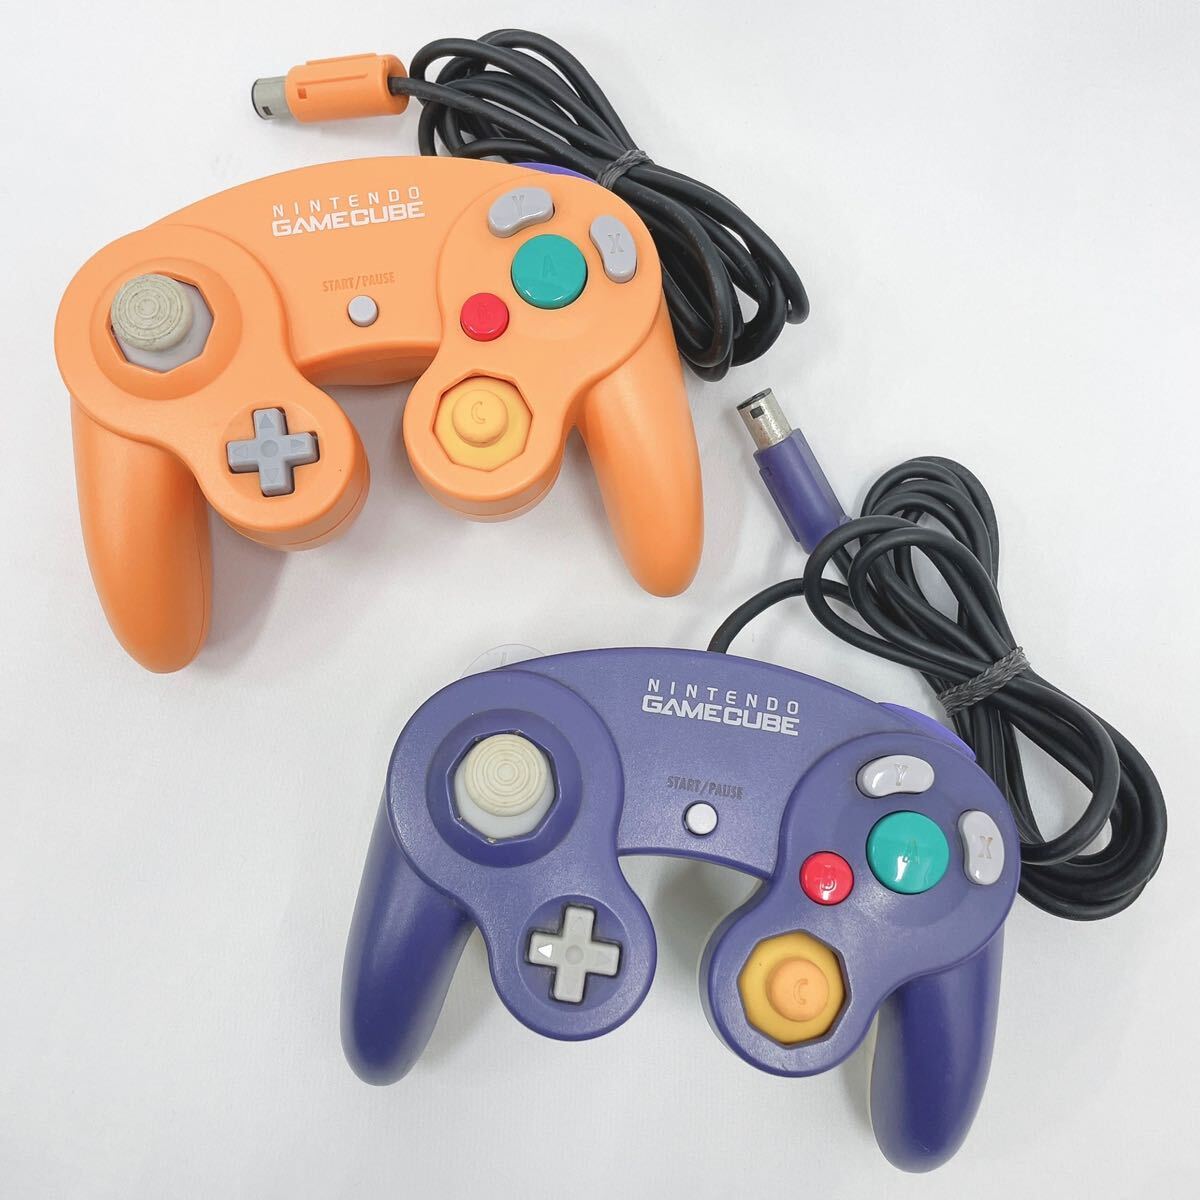 Nintendo Nintendo nintendo Game Cube контроллер 2 позиций комплект DOL-003 orange violet & прозрачный сопутствующие предметы R.03220